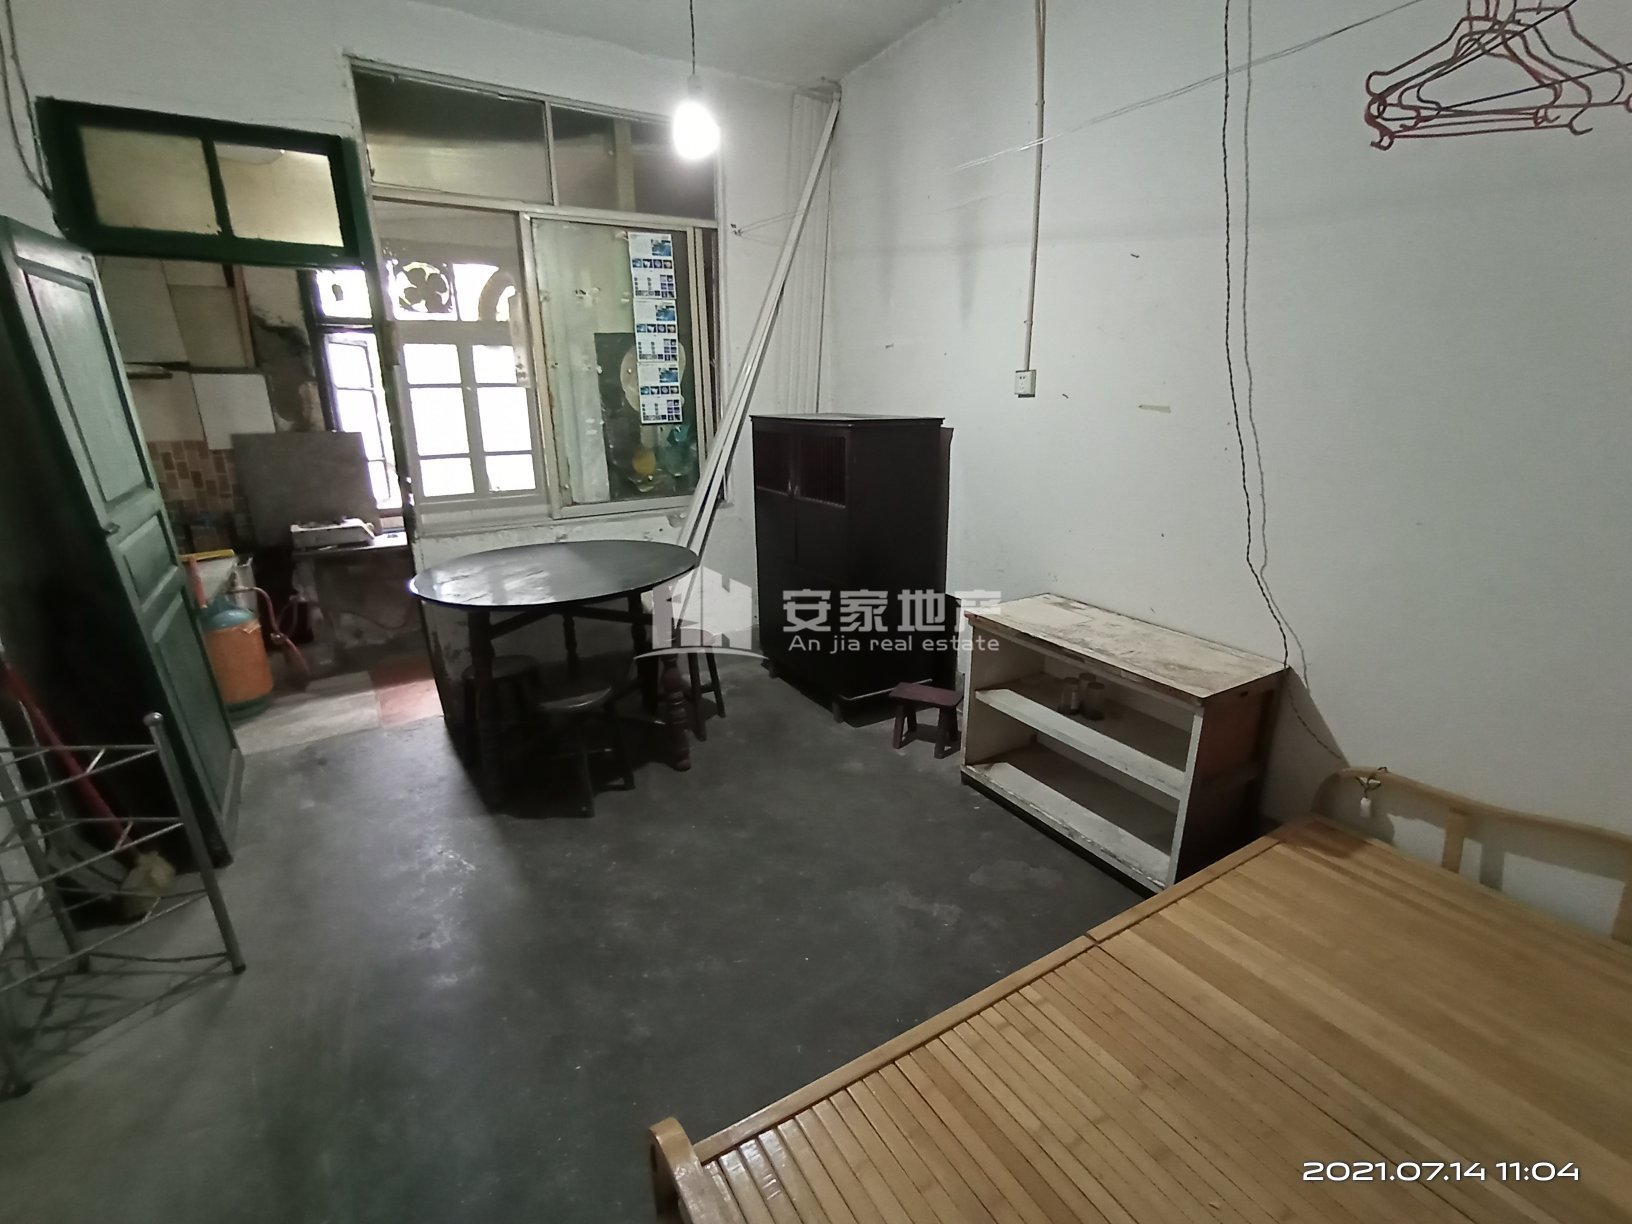 东方鑫村,这个房子 可用于体验生活 磨砺心志 卧薪尝胆5